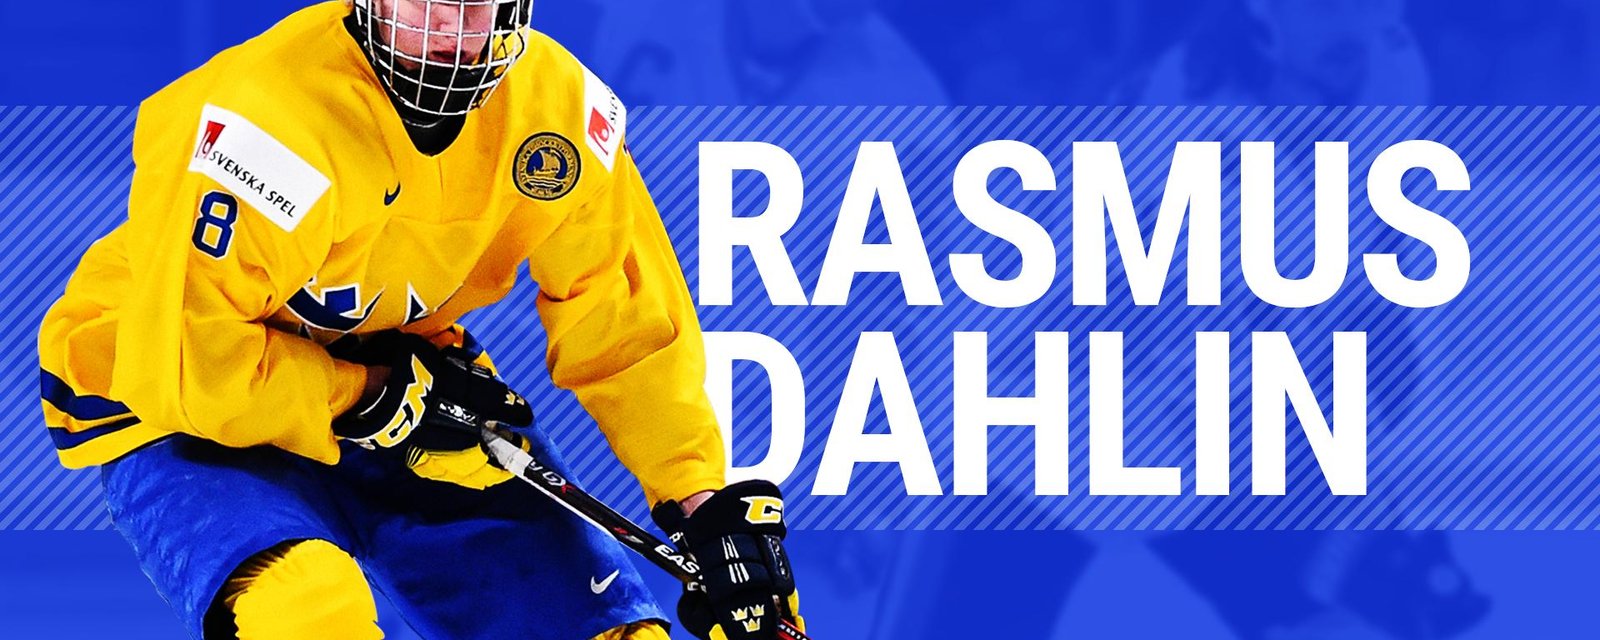 Le destin a privé les Blackhawks de Rasmus Dahlin!